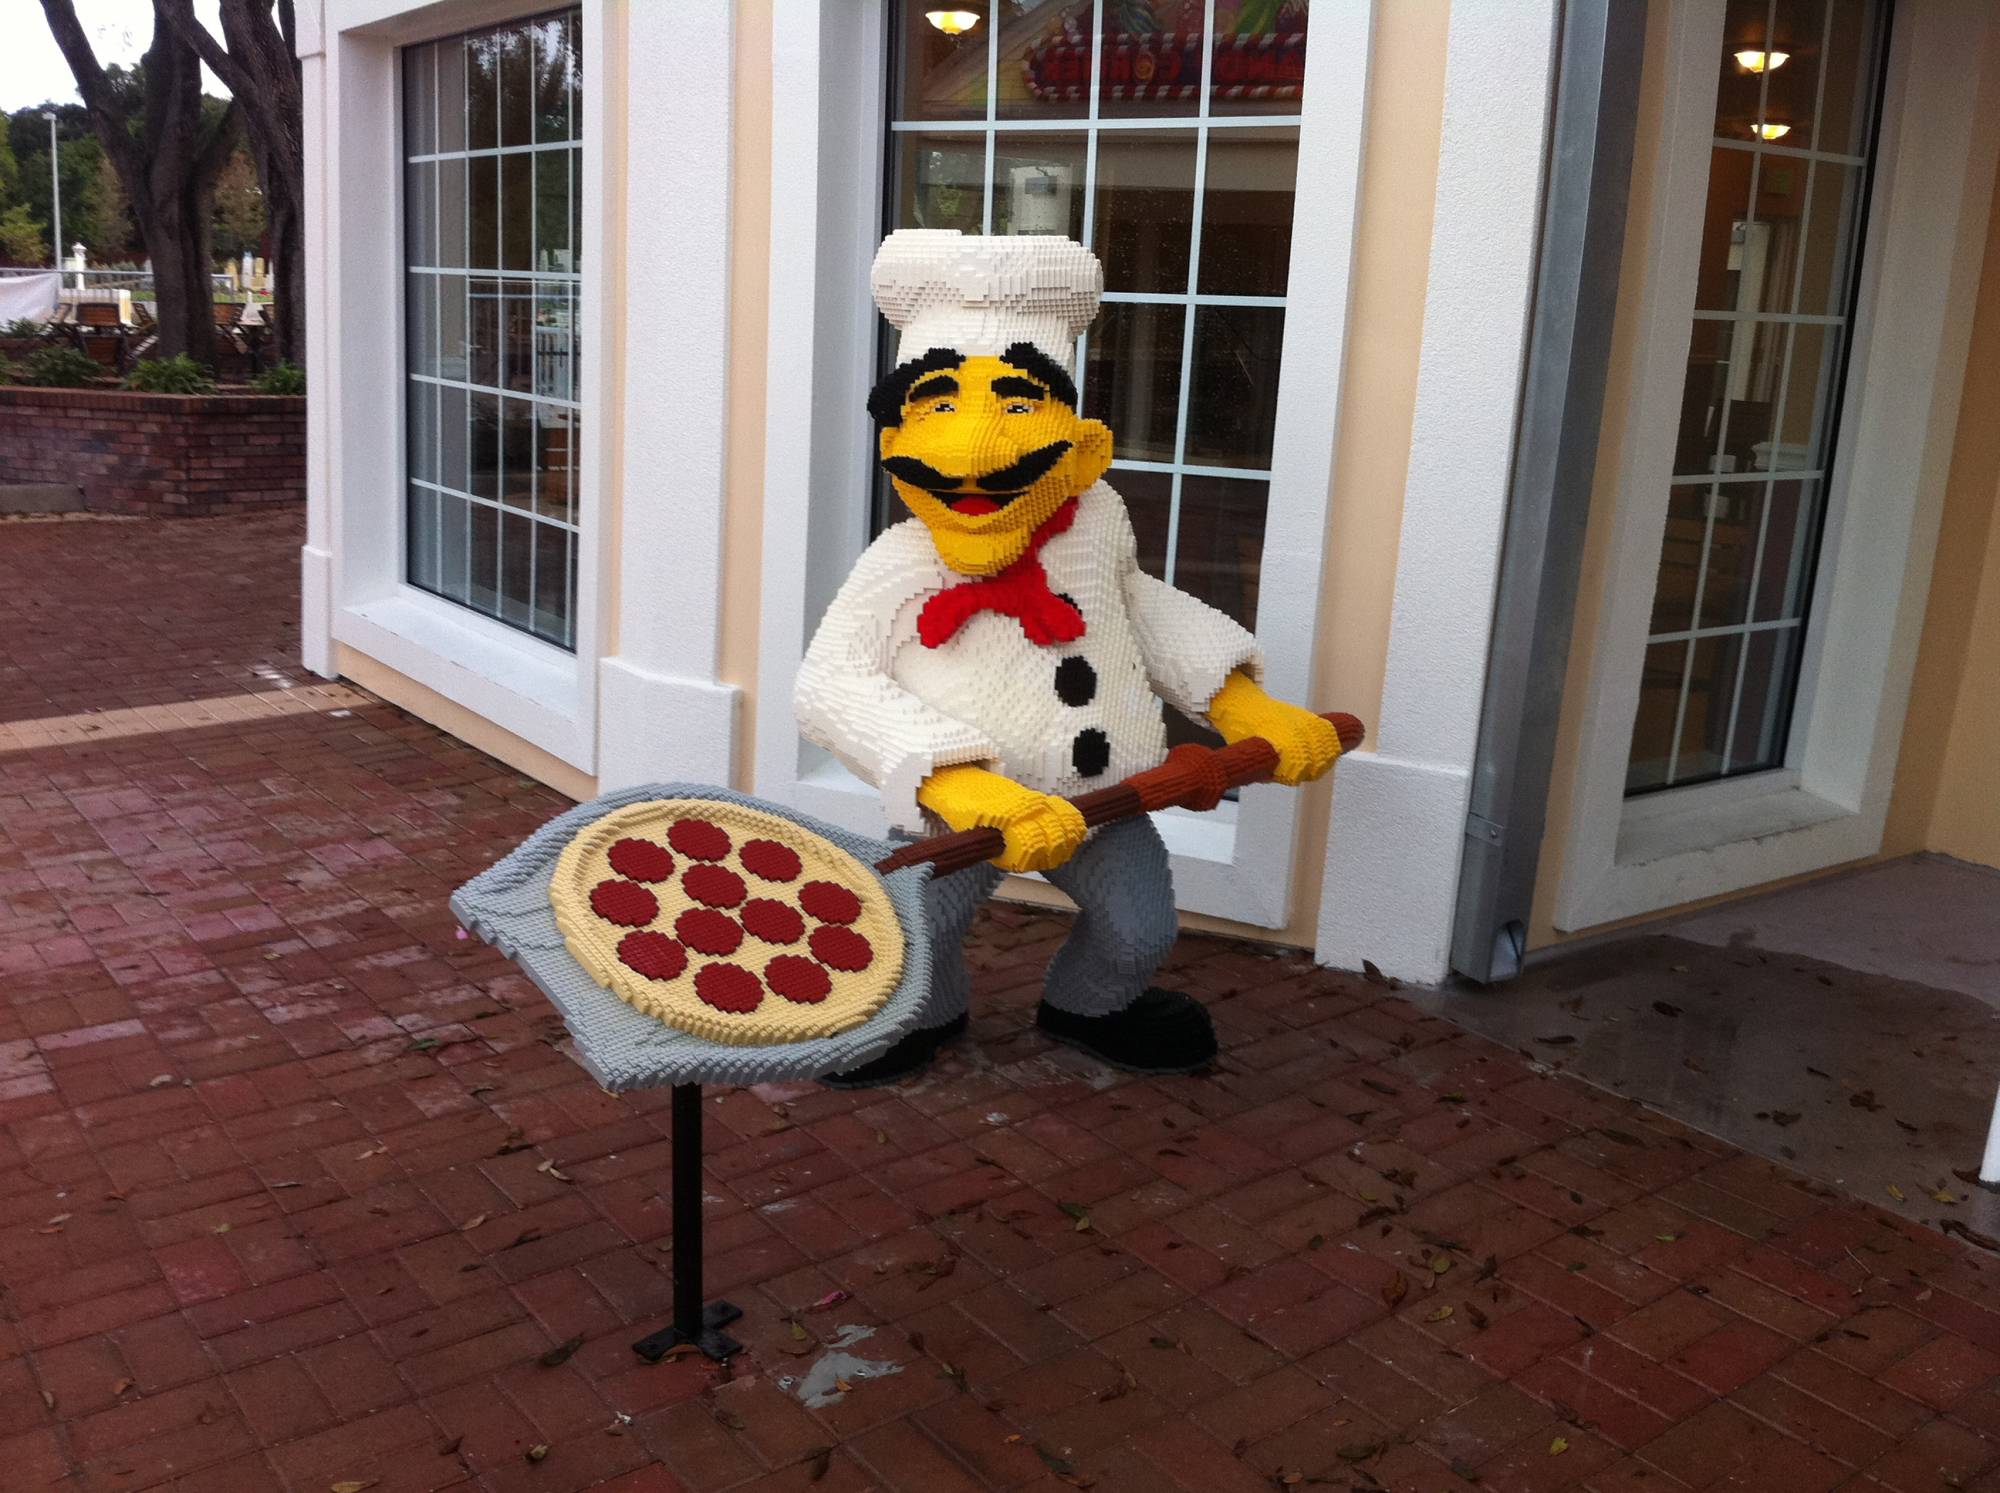 Pizza Man at LEGOLAND Florida